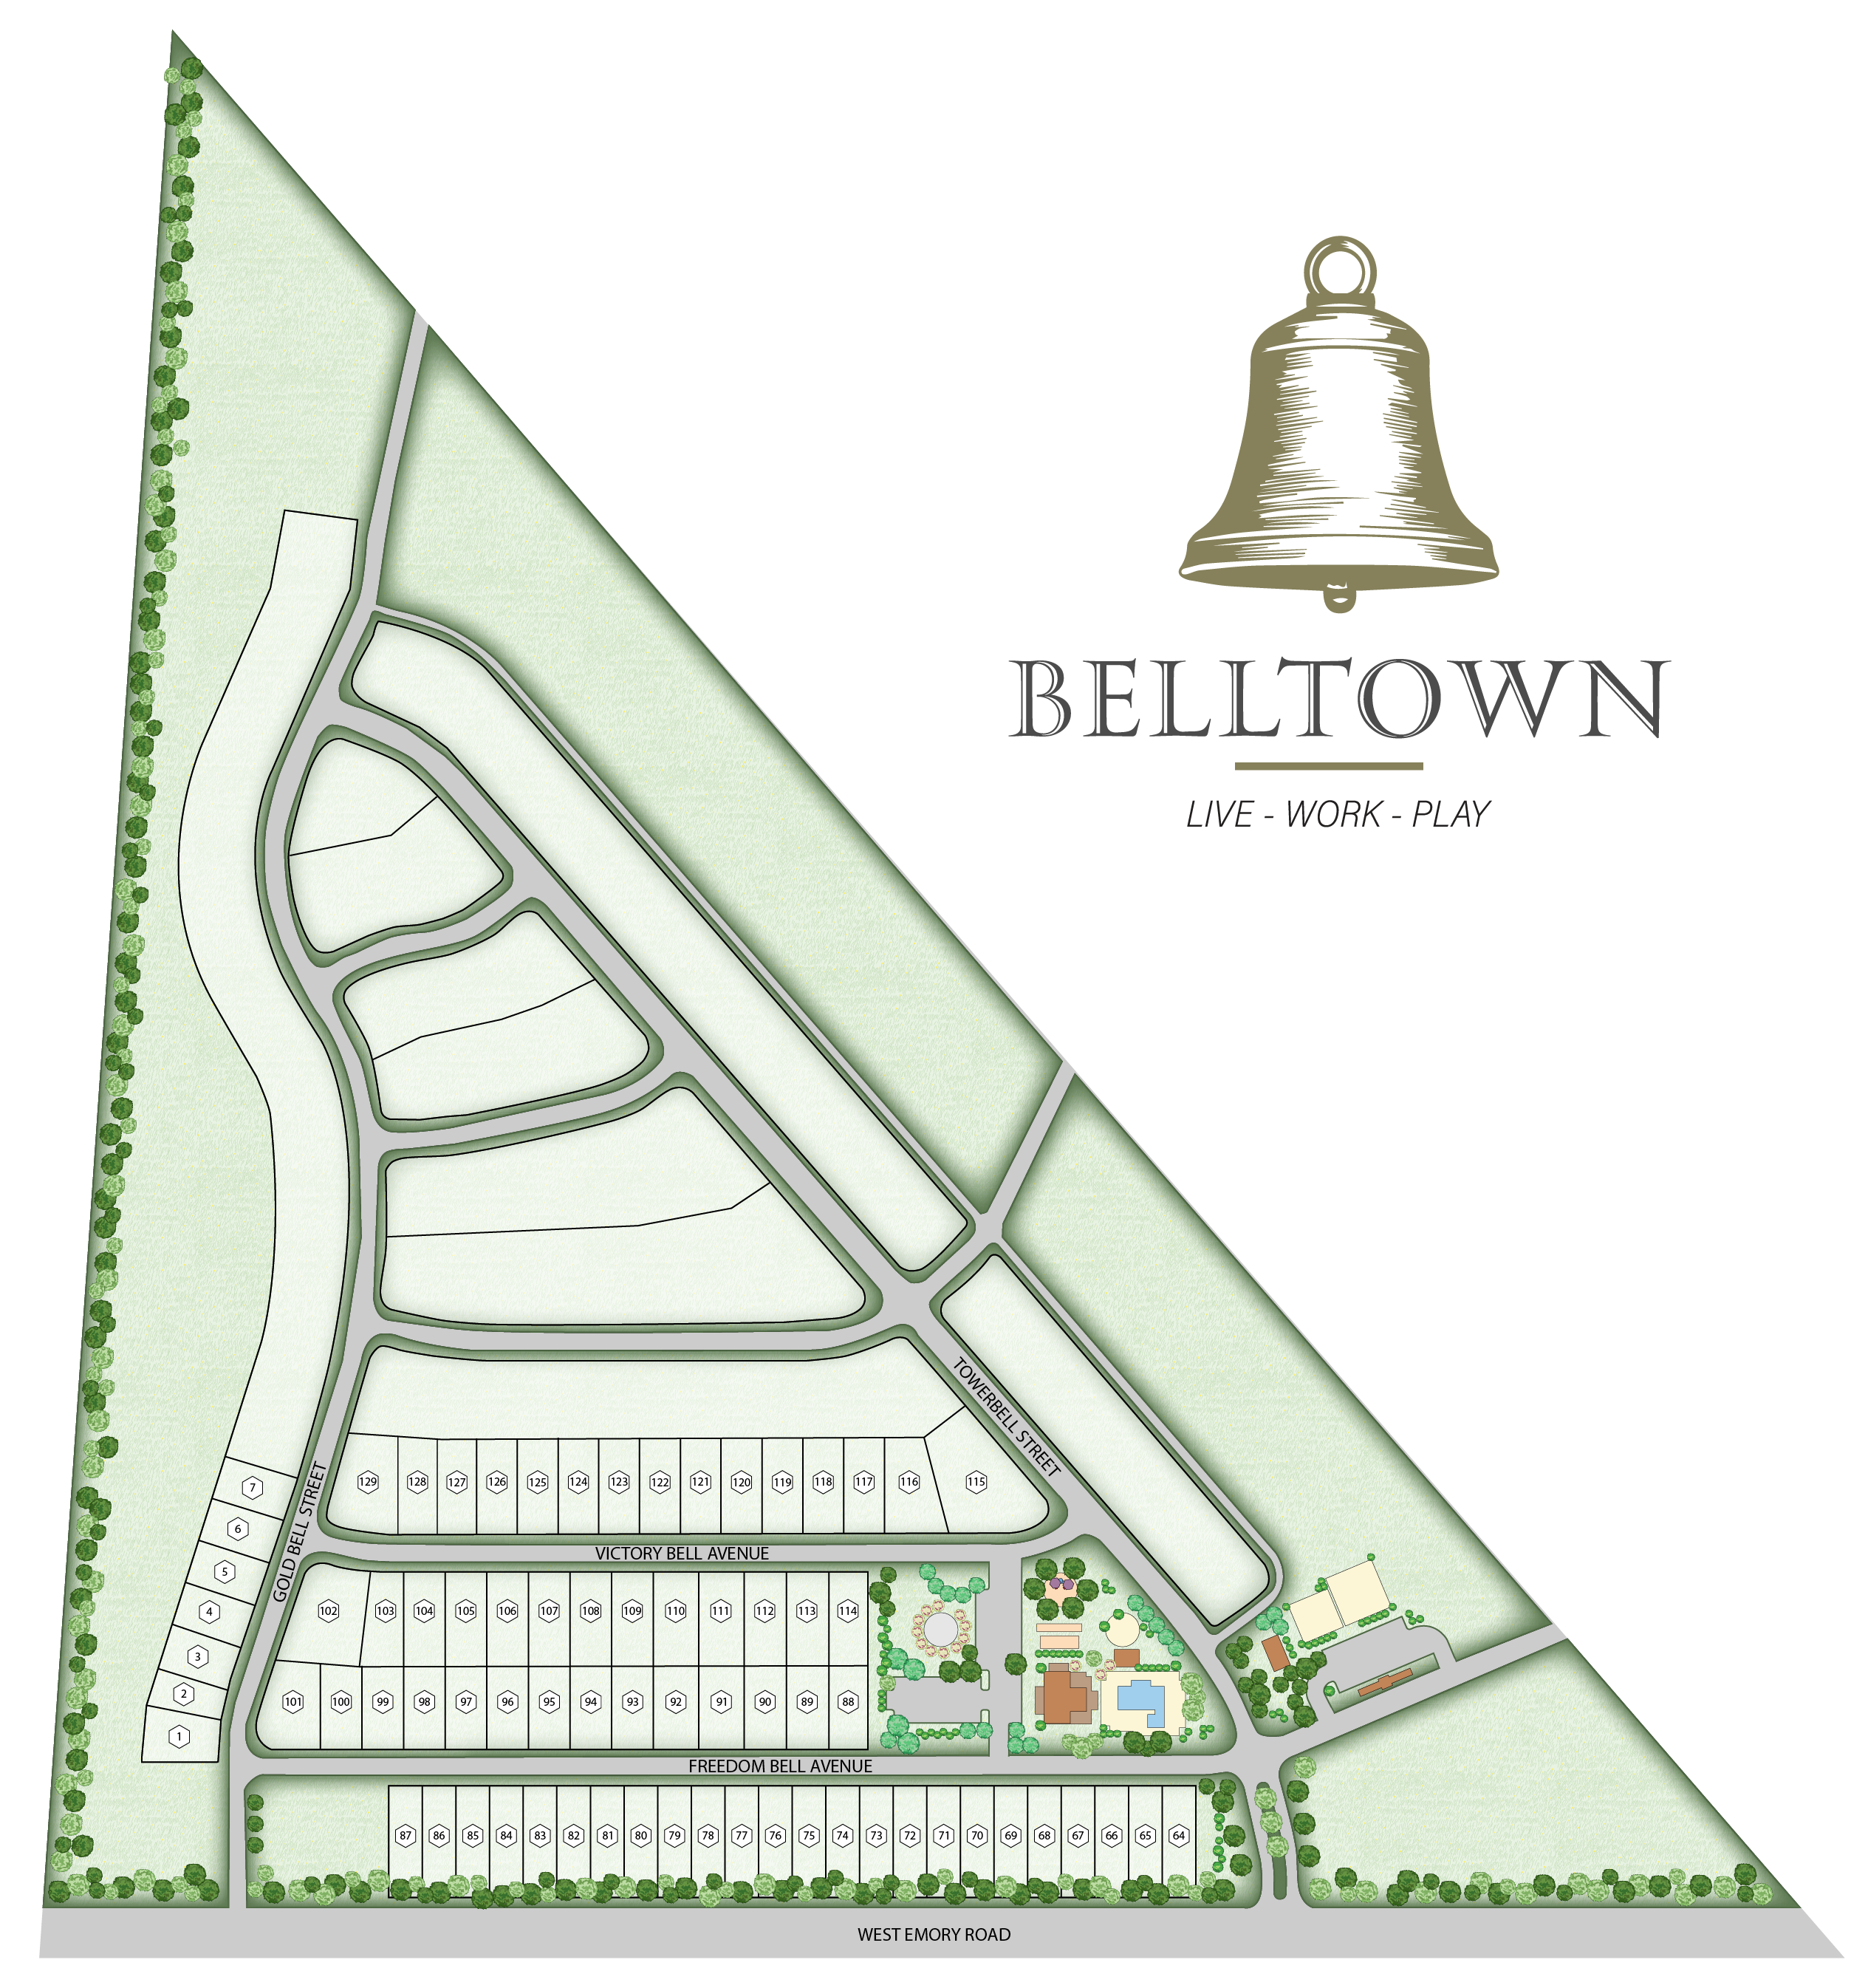 Belltown